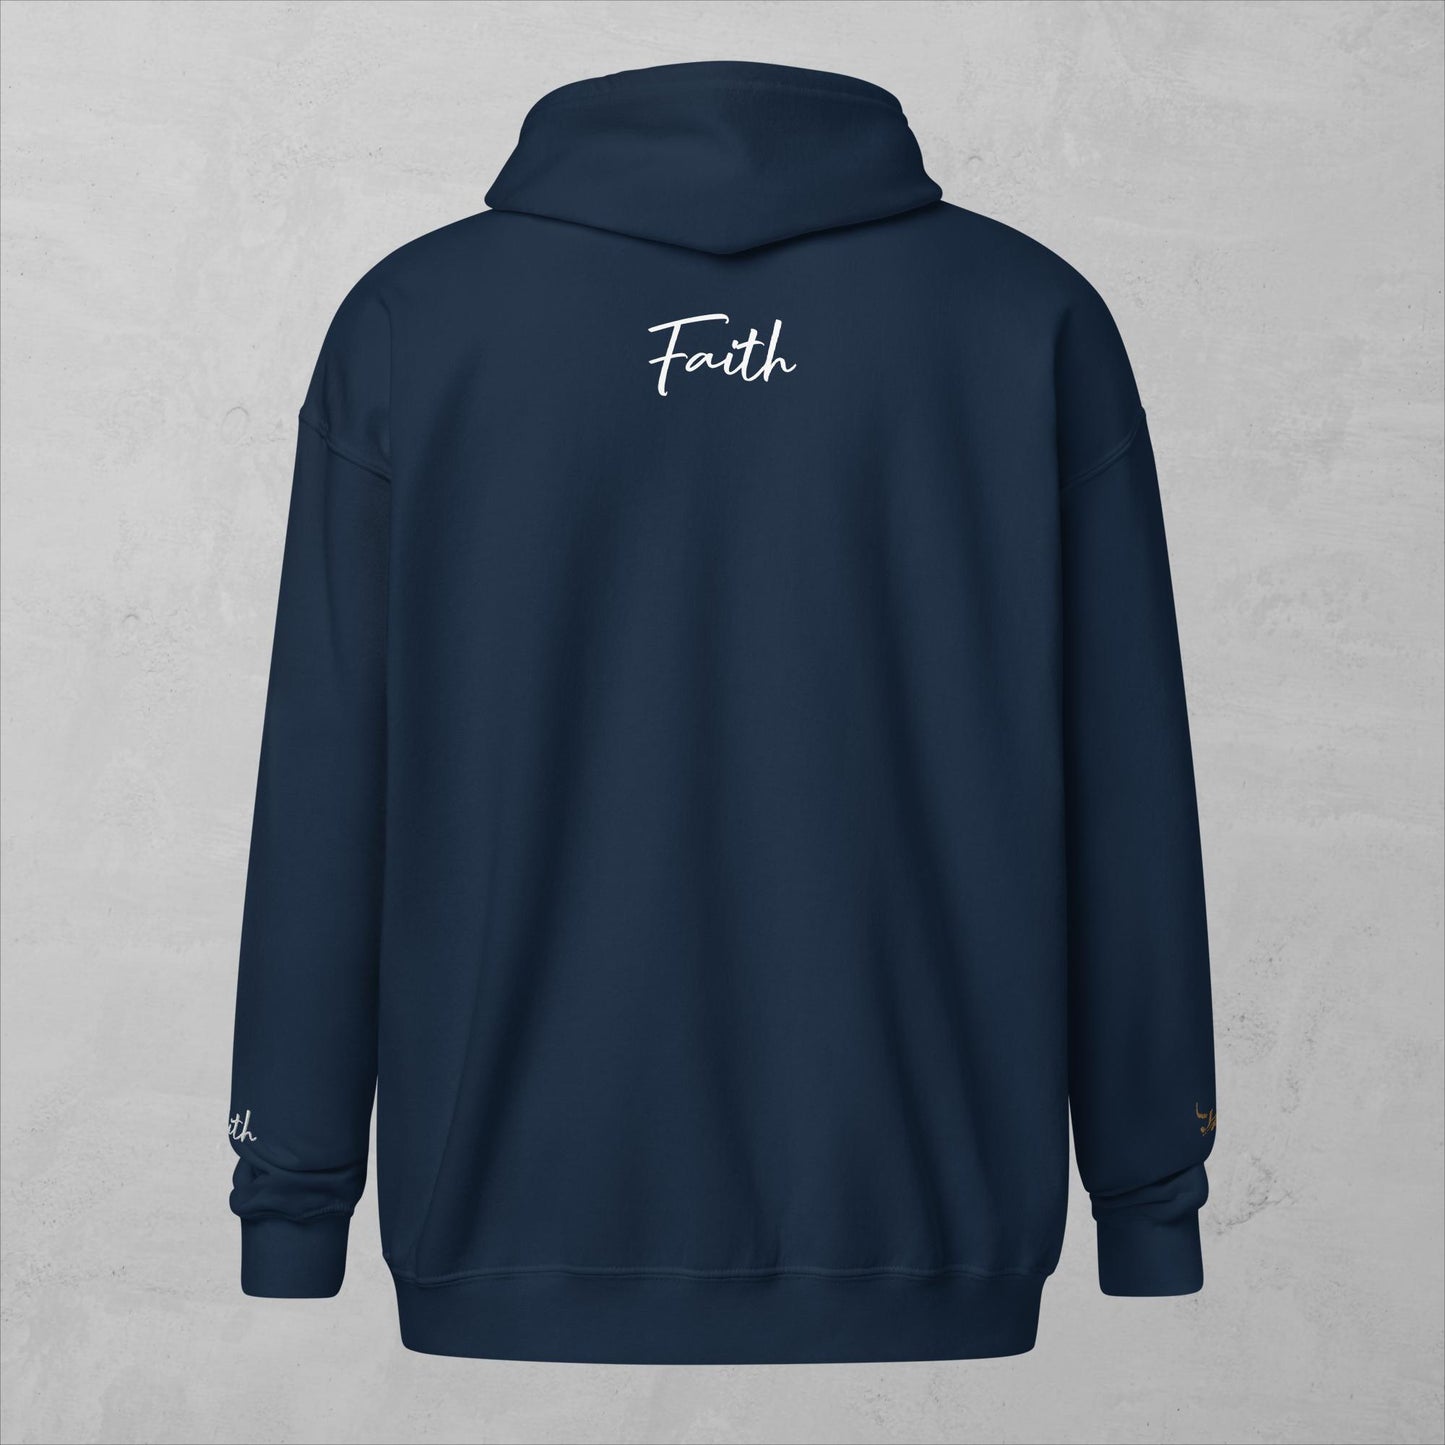 J.A Faith heavy blend zip hoodie